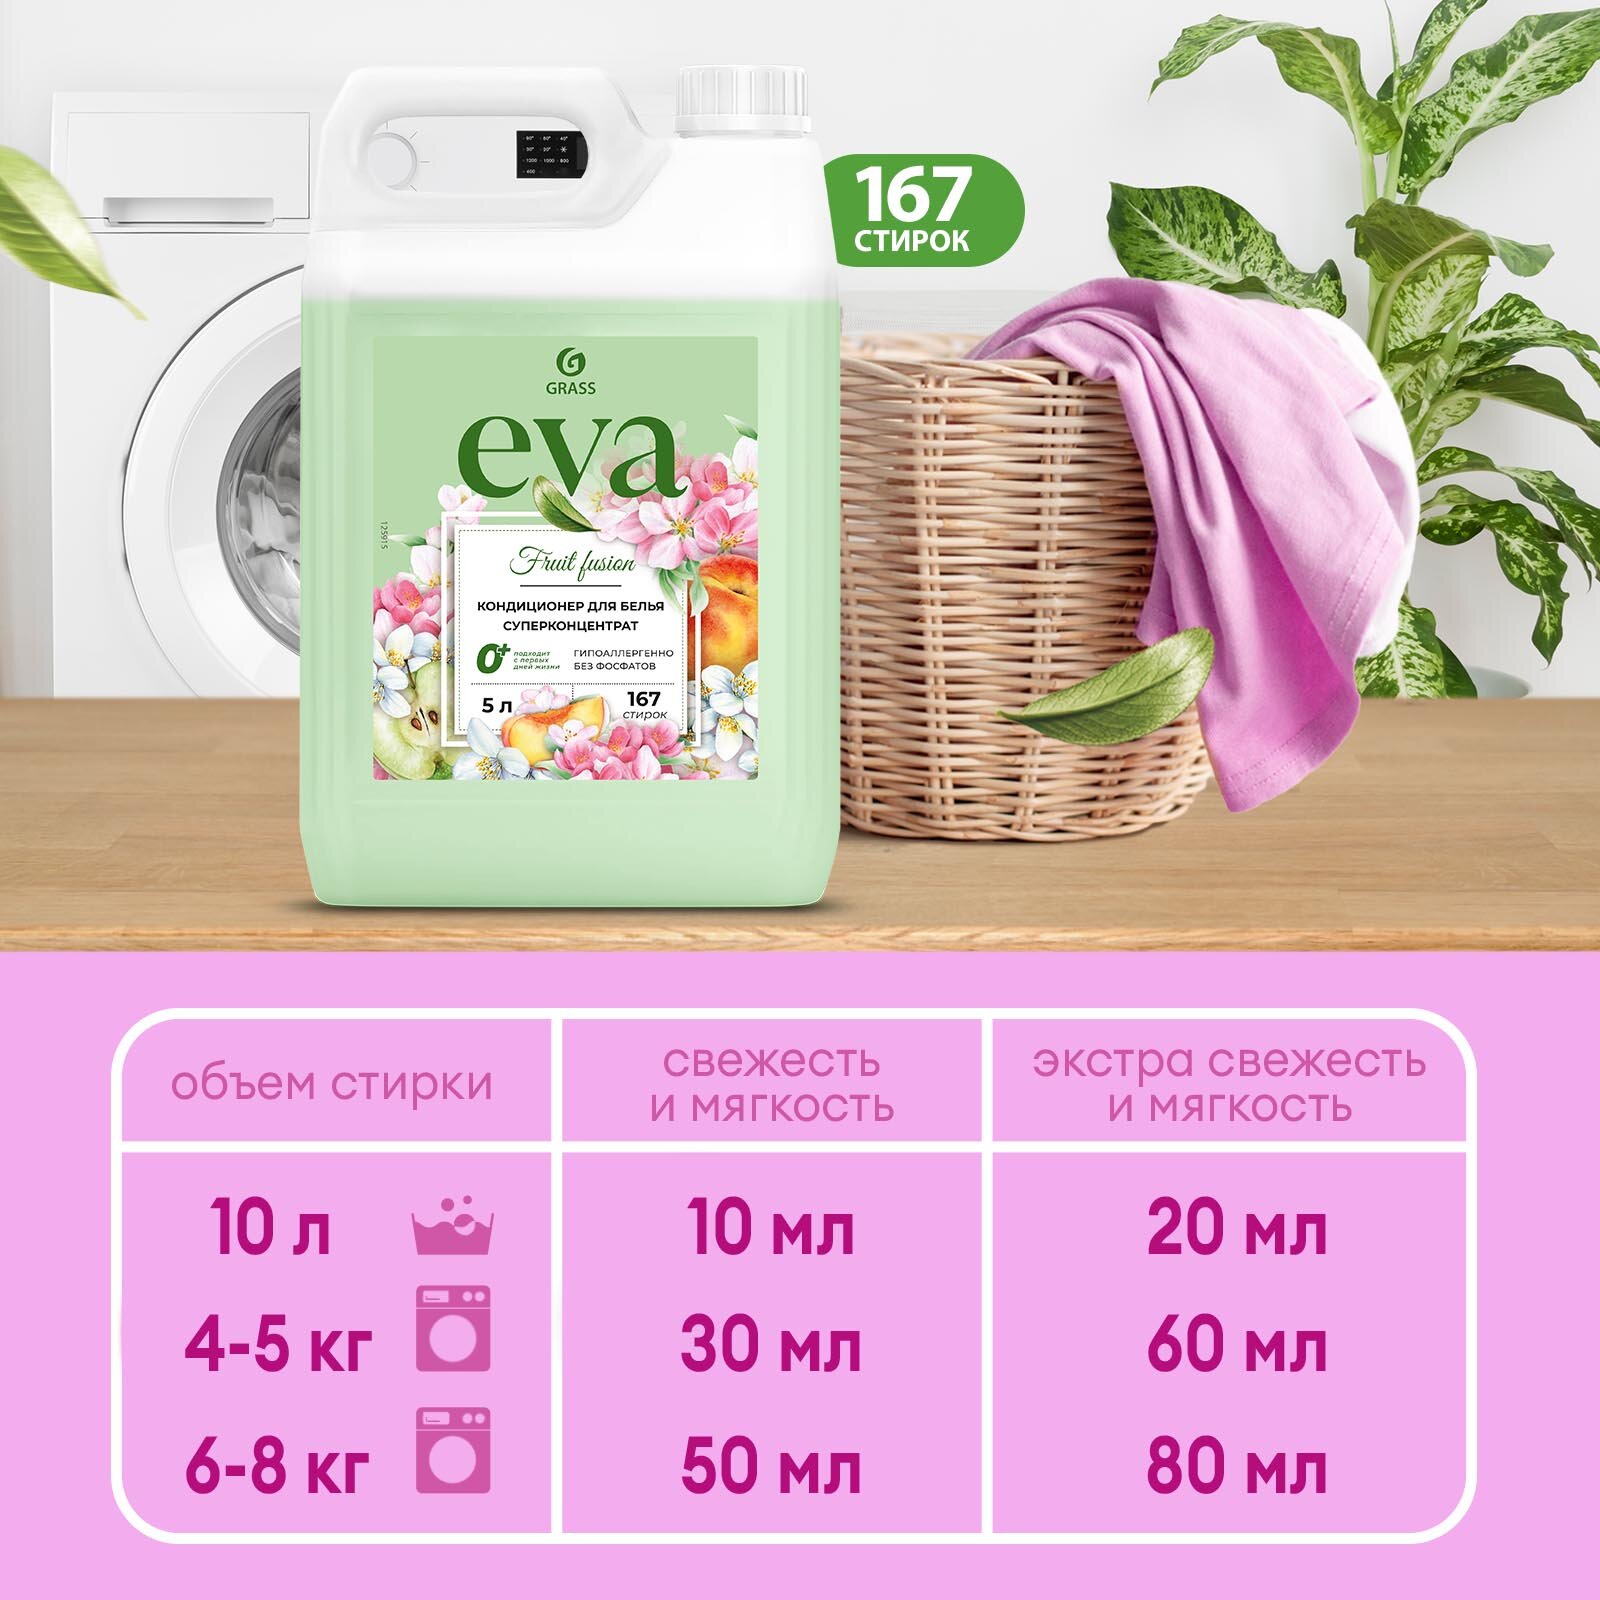 Кондиционер Grass Eva Sensitive для белья 5л - фото №4